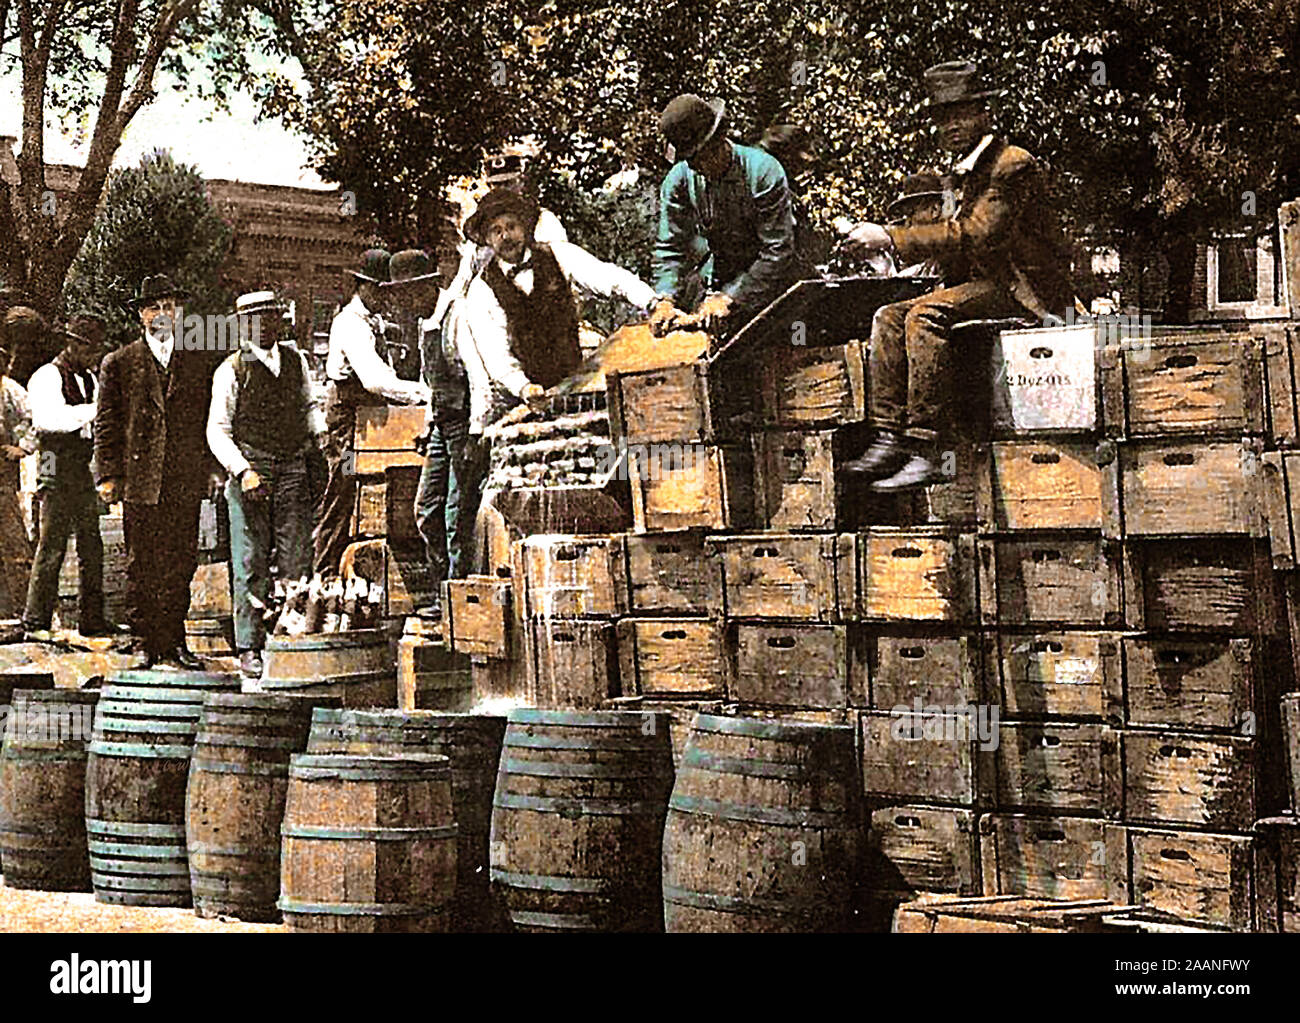 Verbot/TEETOTALISM/FRONT/ABSTINENZ - ein 1907 Postkarte Bild - 1907 - Verbot in Kansas, USA, Zerstörung von $ 3000 im Wert von Alkohol im County Courthouse, Unabhängigkeit, Kansas. (In einigen Mitgliedstaaten, das Verbot wurde bereits in Kraft, die durch Verbot wurde eine juristische landesweites Verbot für den Verkauf und den Import von alkoholischen Getränken, die von 1920 bis 1933 dauerte). Stockfoto